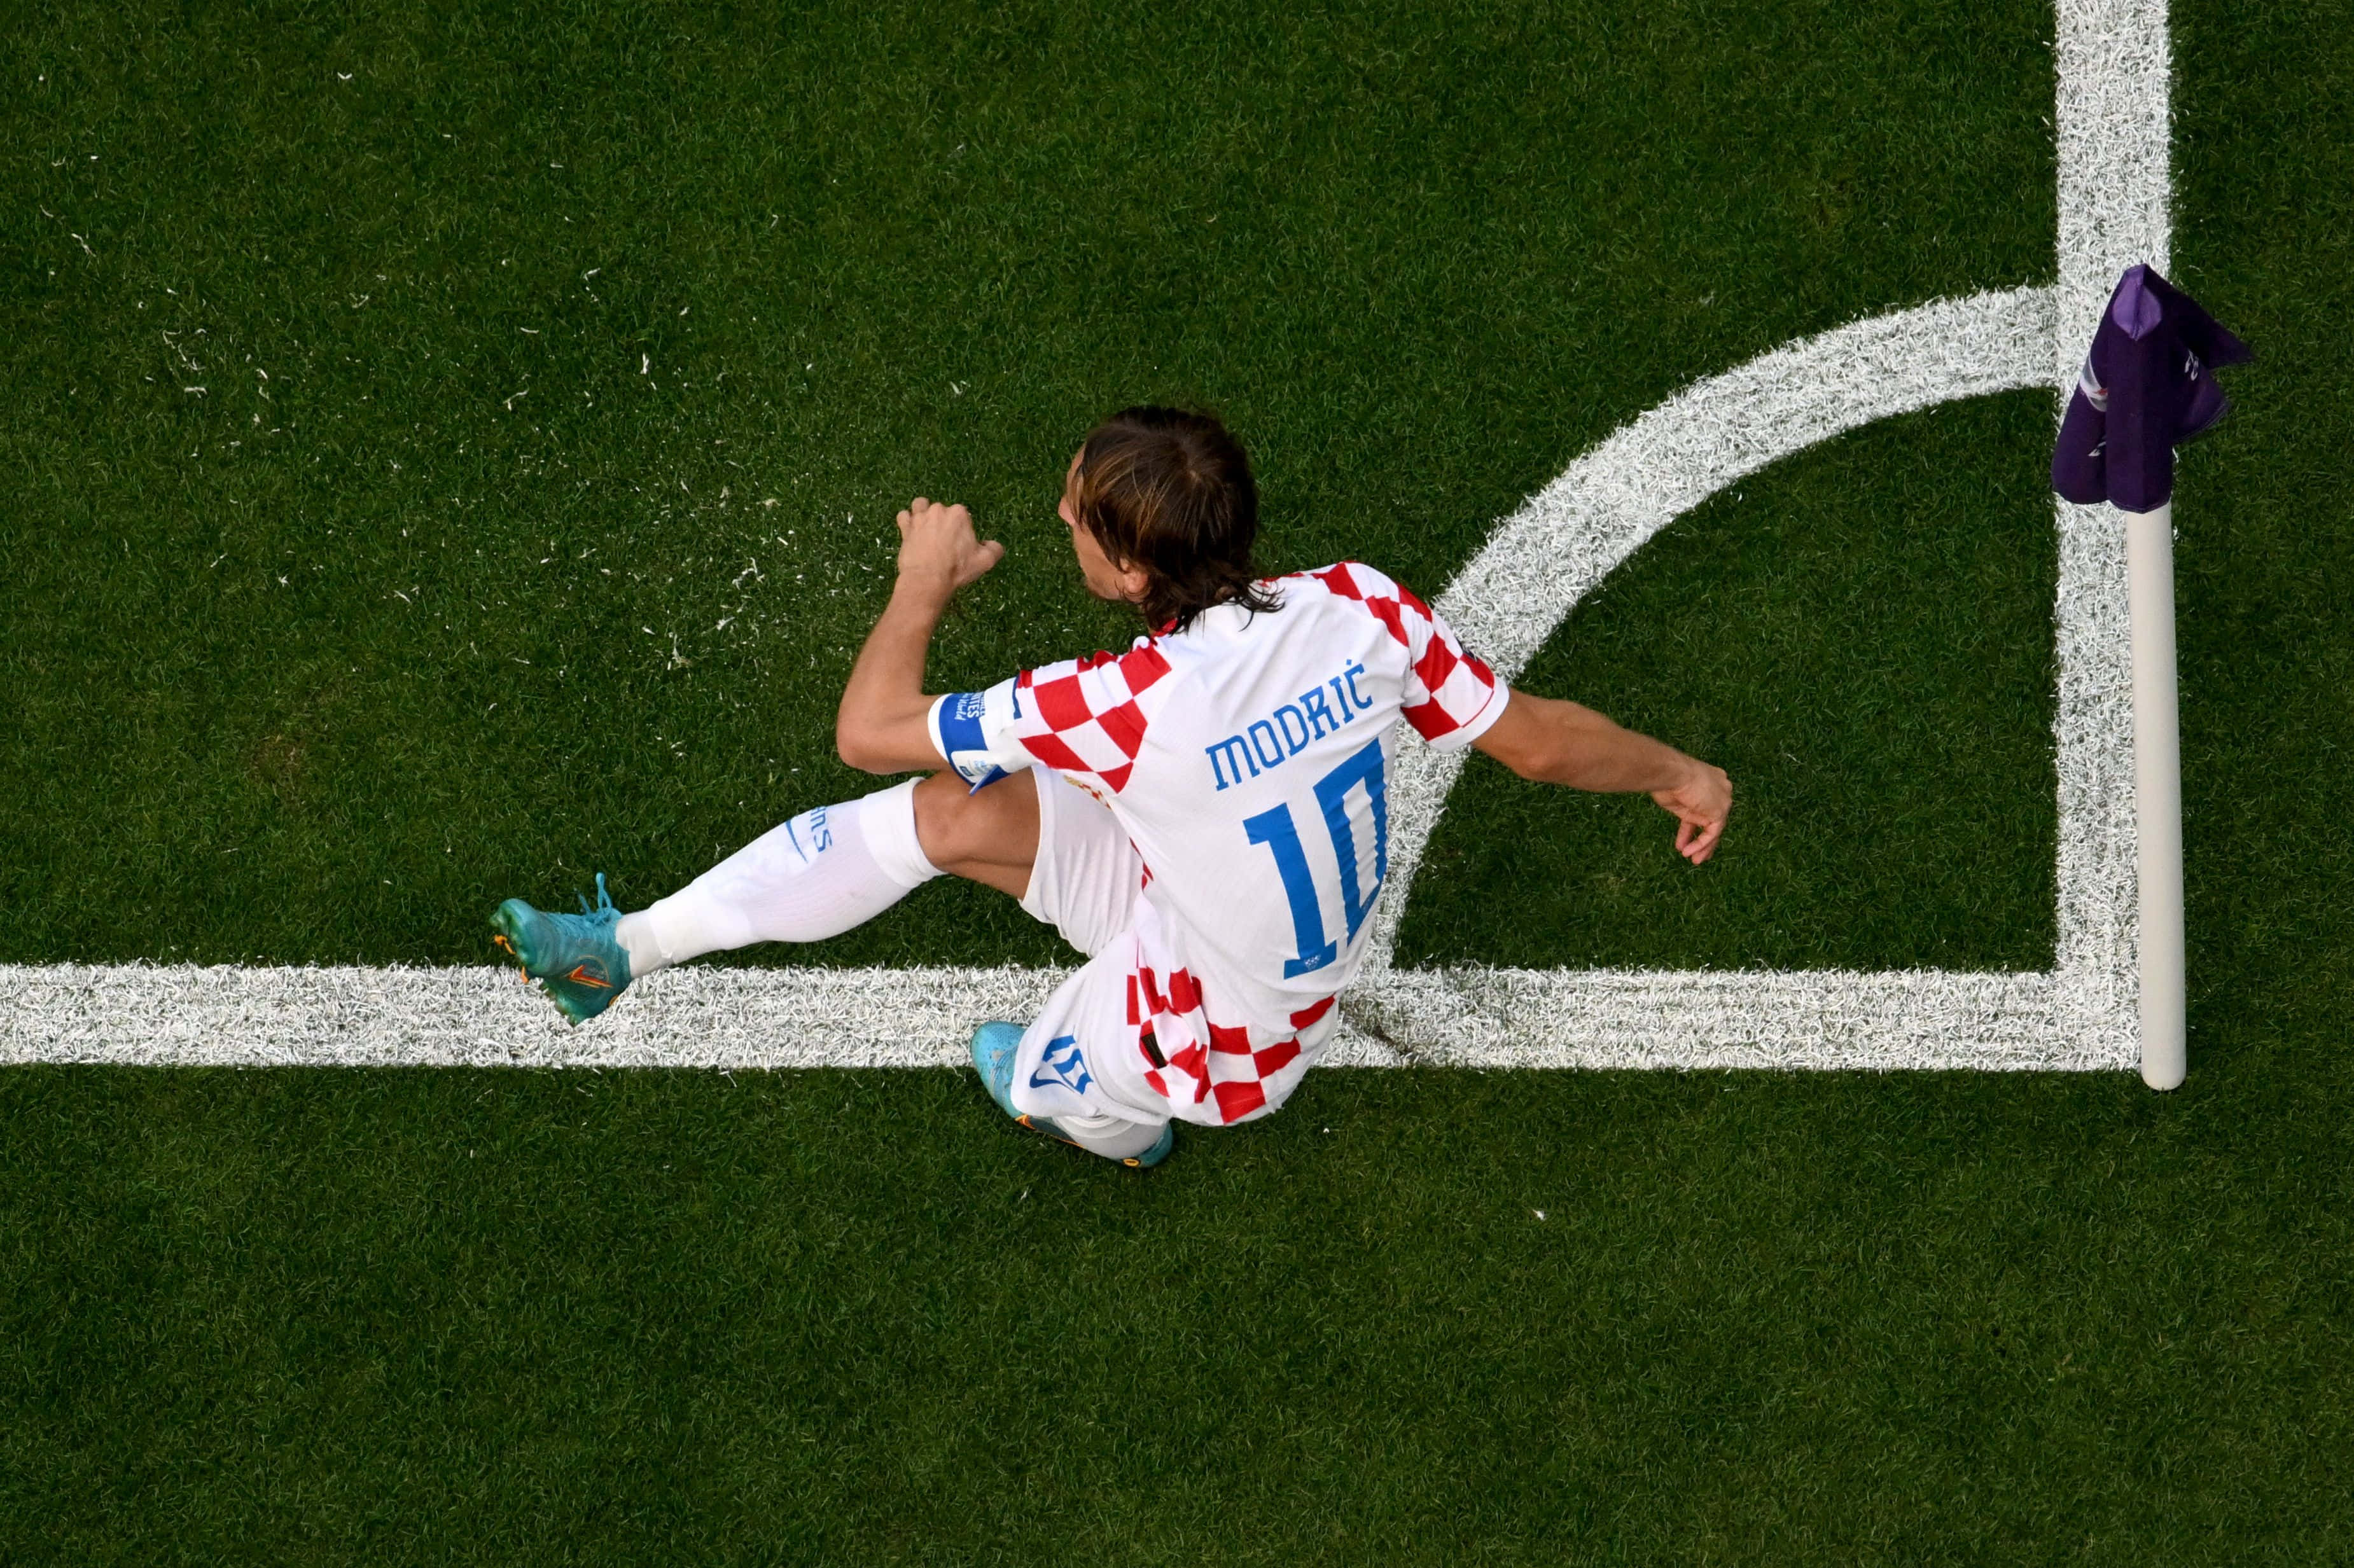 Intense Moment Of A Corner Kick In A Football Match Wallpaper